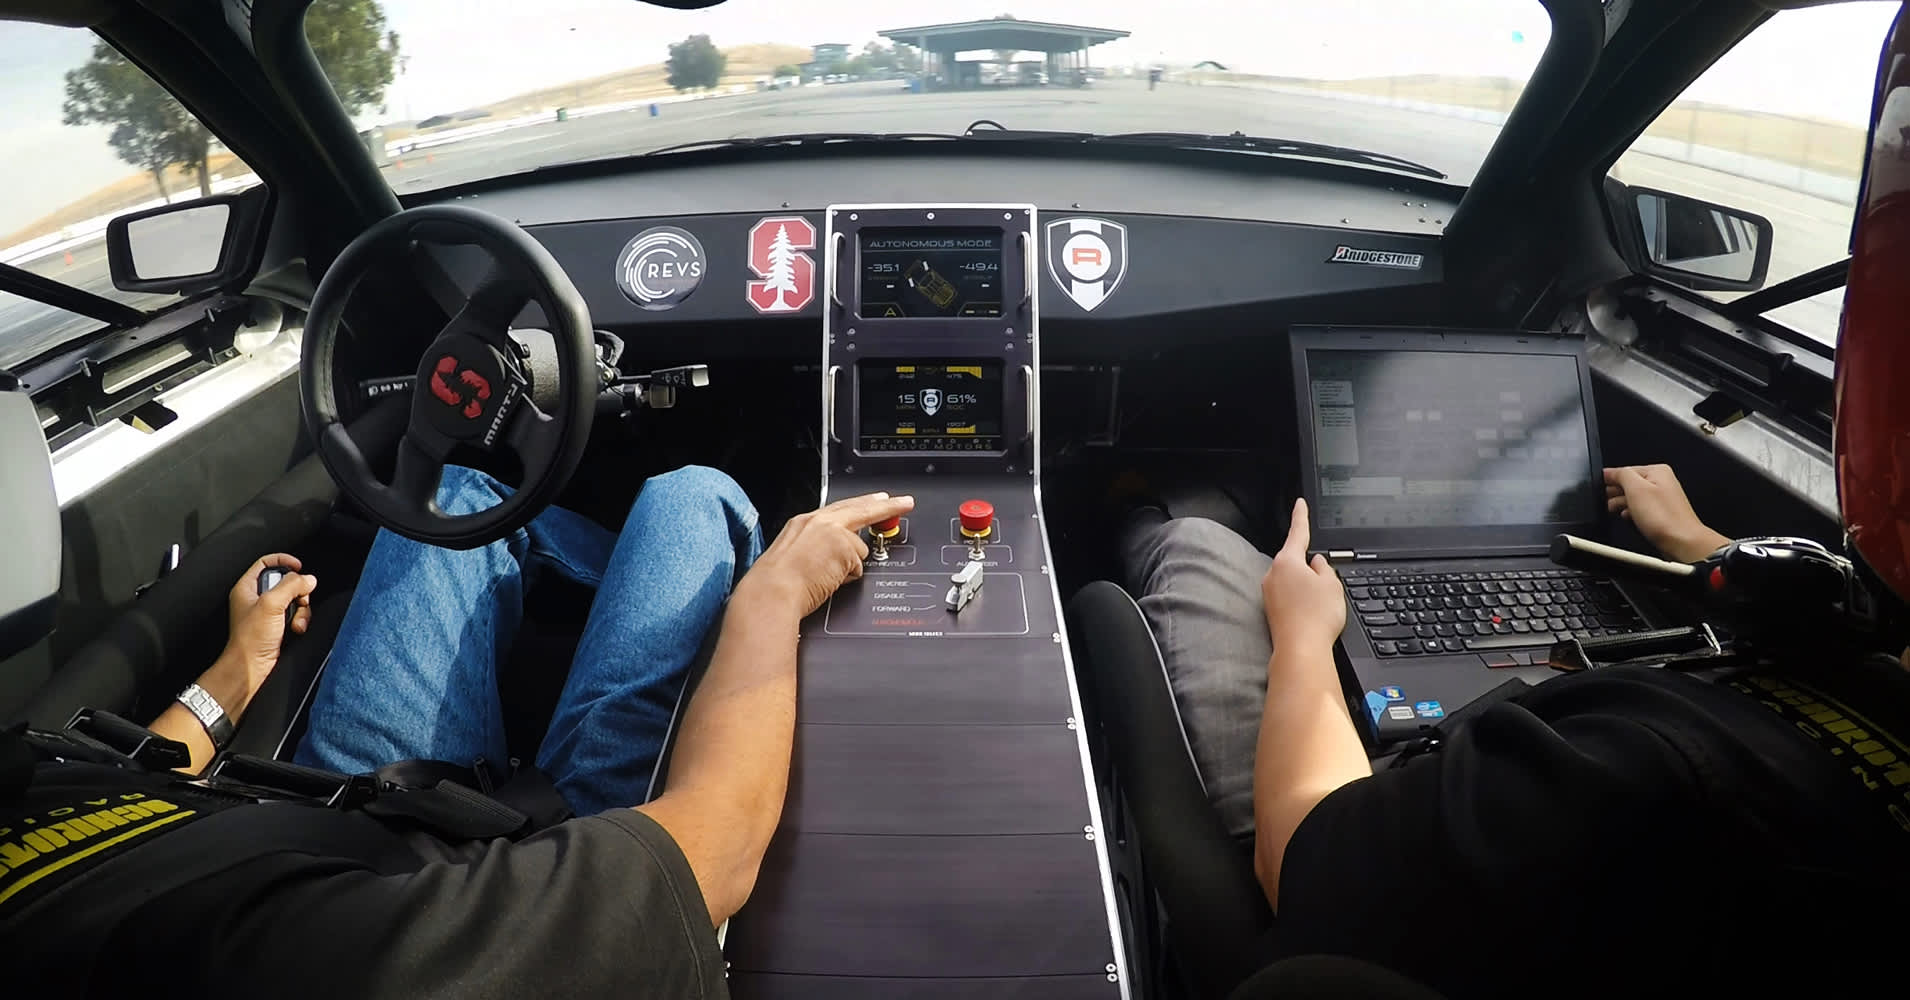 Stanford turns a DeLorean into a drifting, driverless car